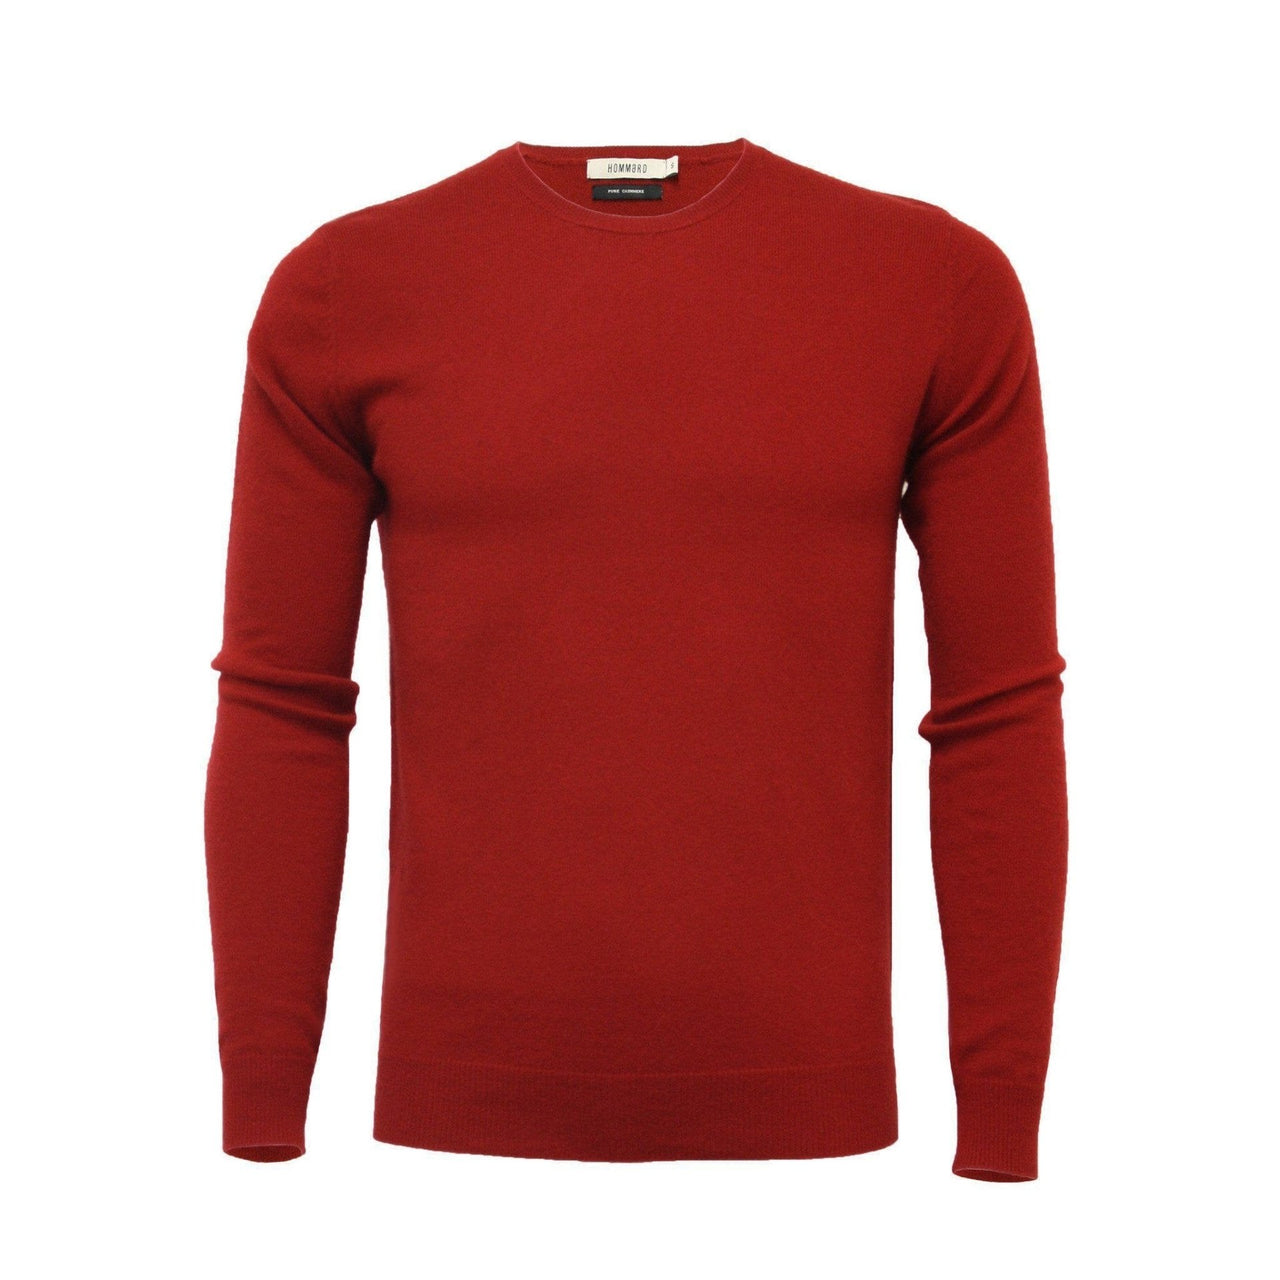 Bordeaux Cashmere Crew Neck Sweater - Mervyns